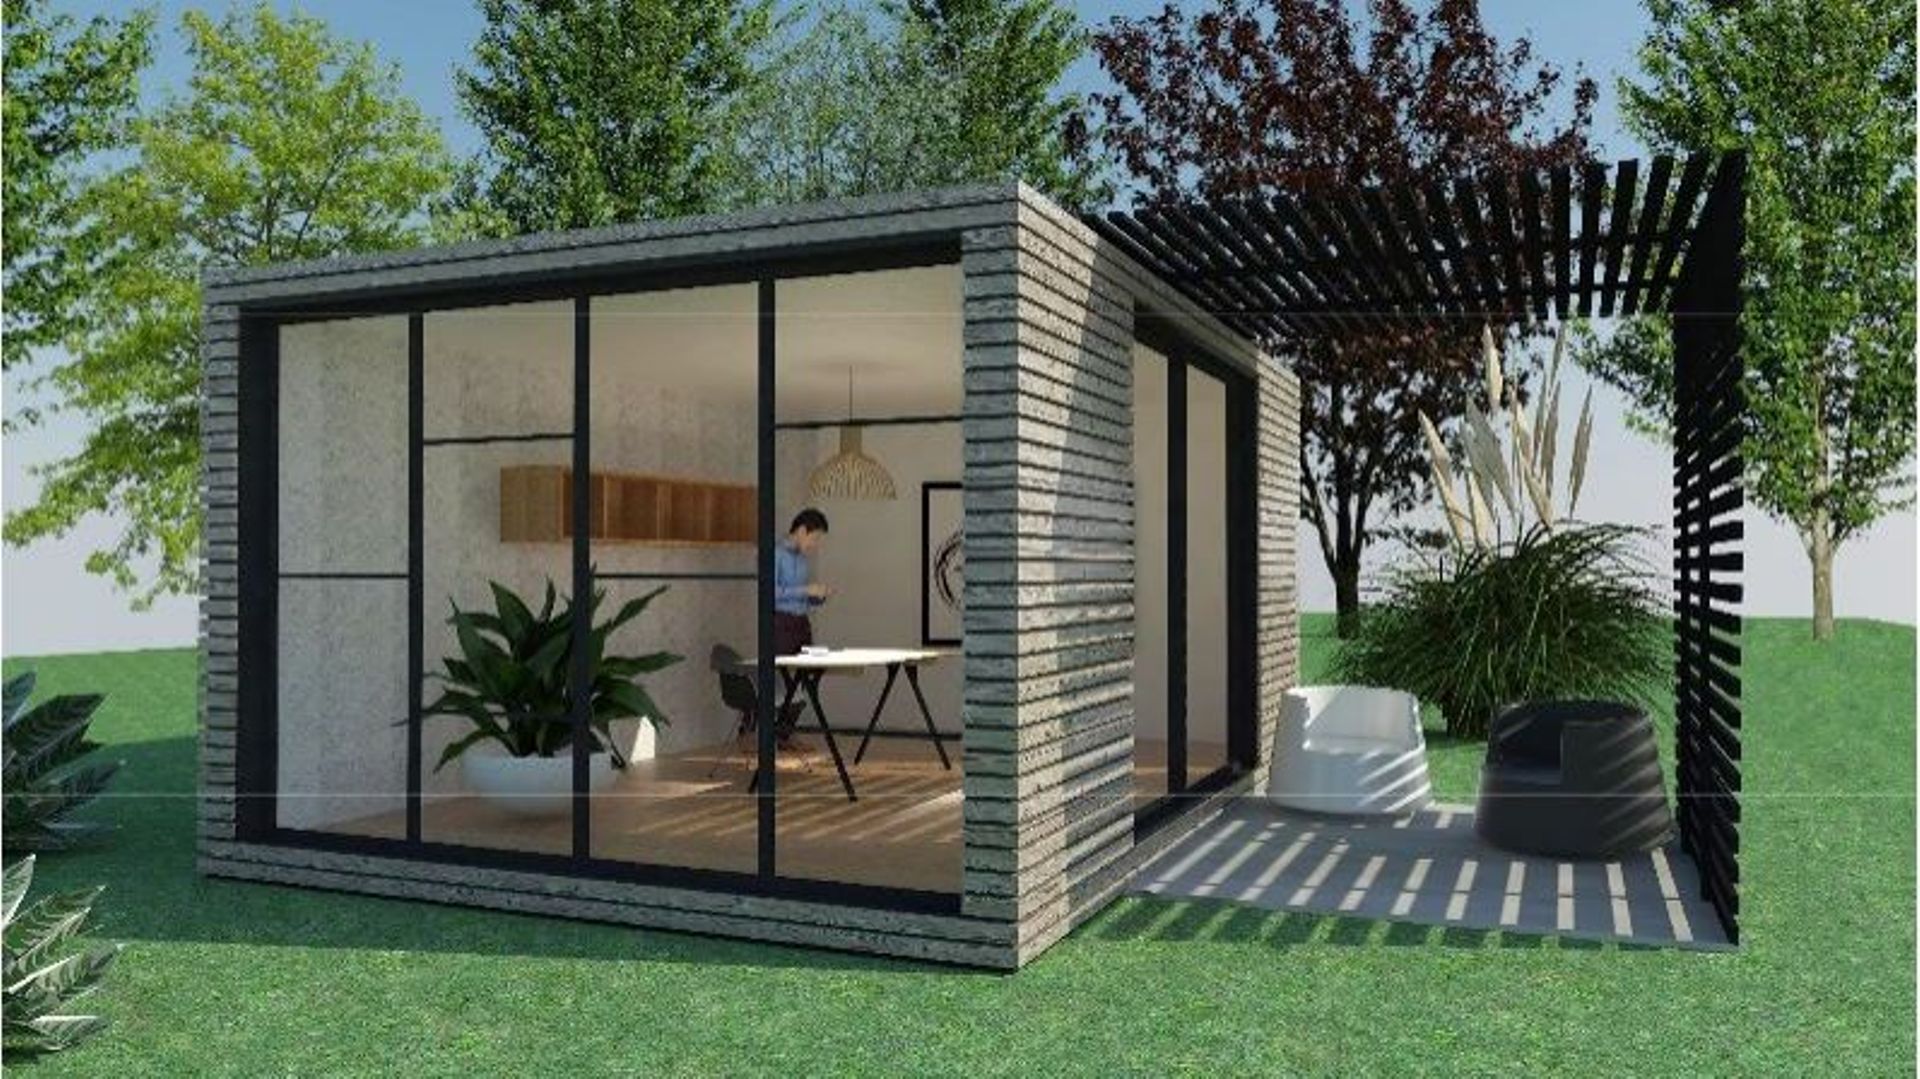 Le salon "Camp'Air" présente de nouvelles formes d'hébergement insolites ou originales 